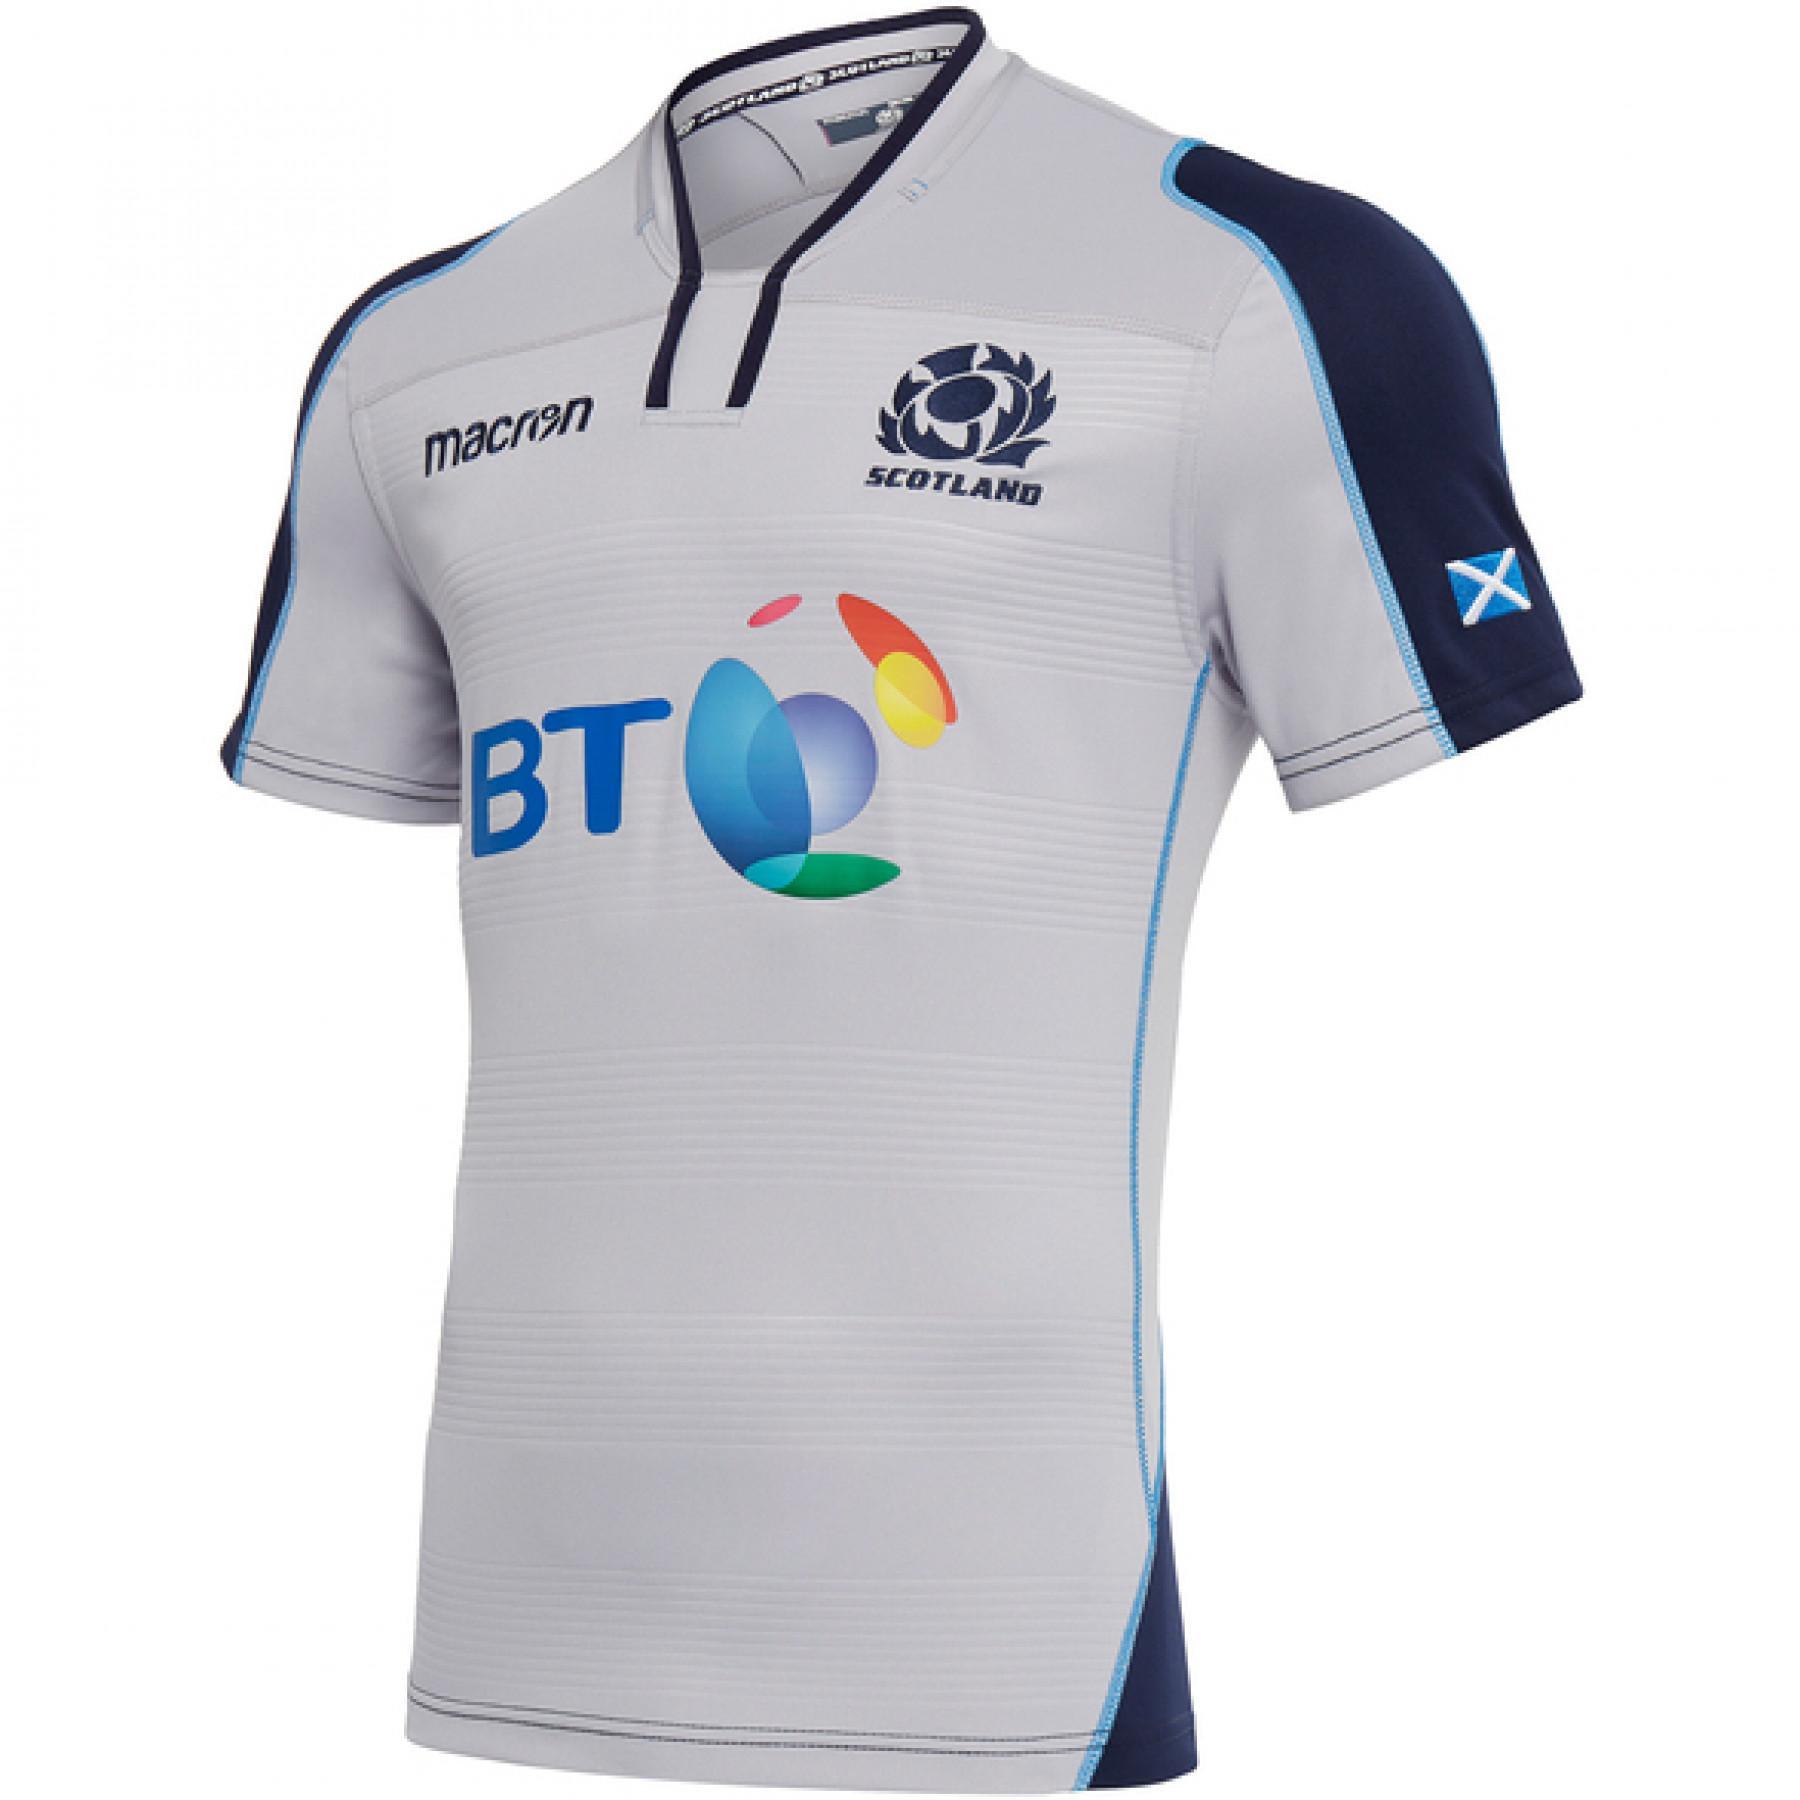 Camiseta de exterior para el hogar Scotland Rugby 18/19